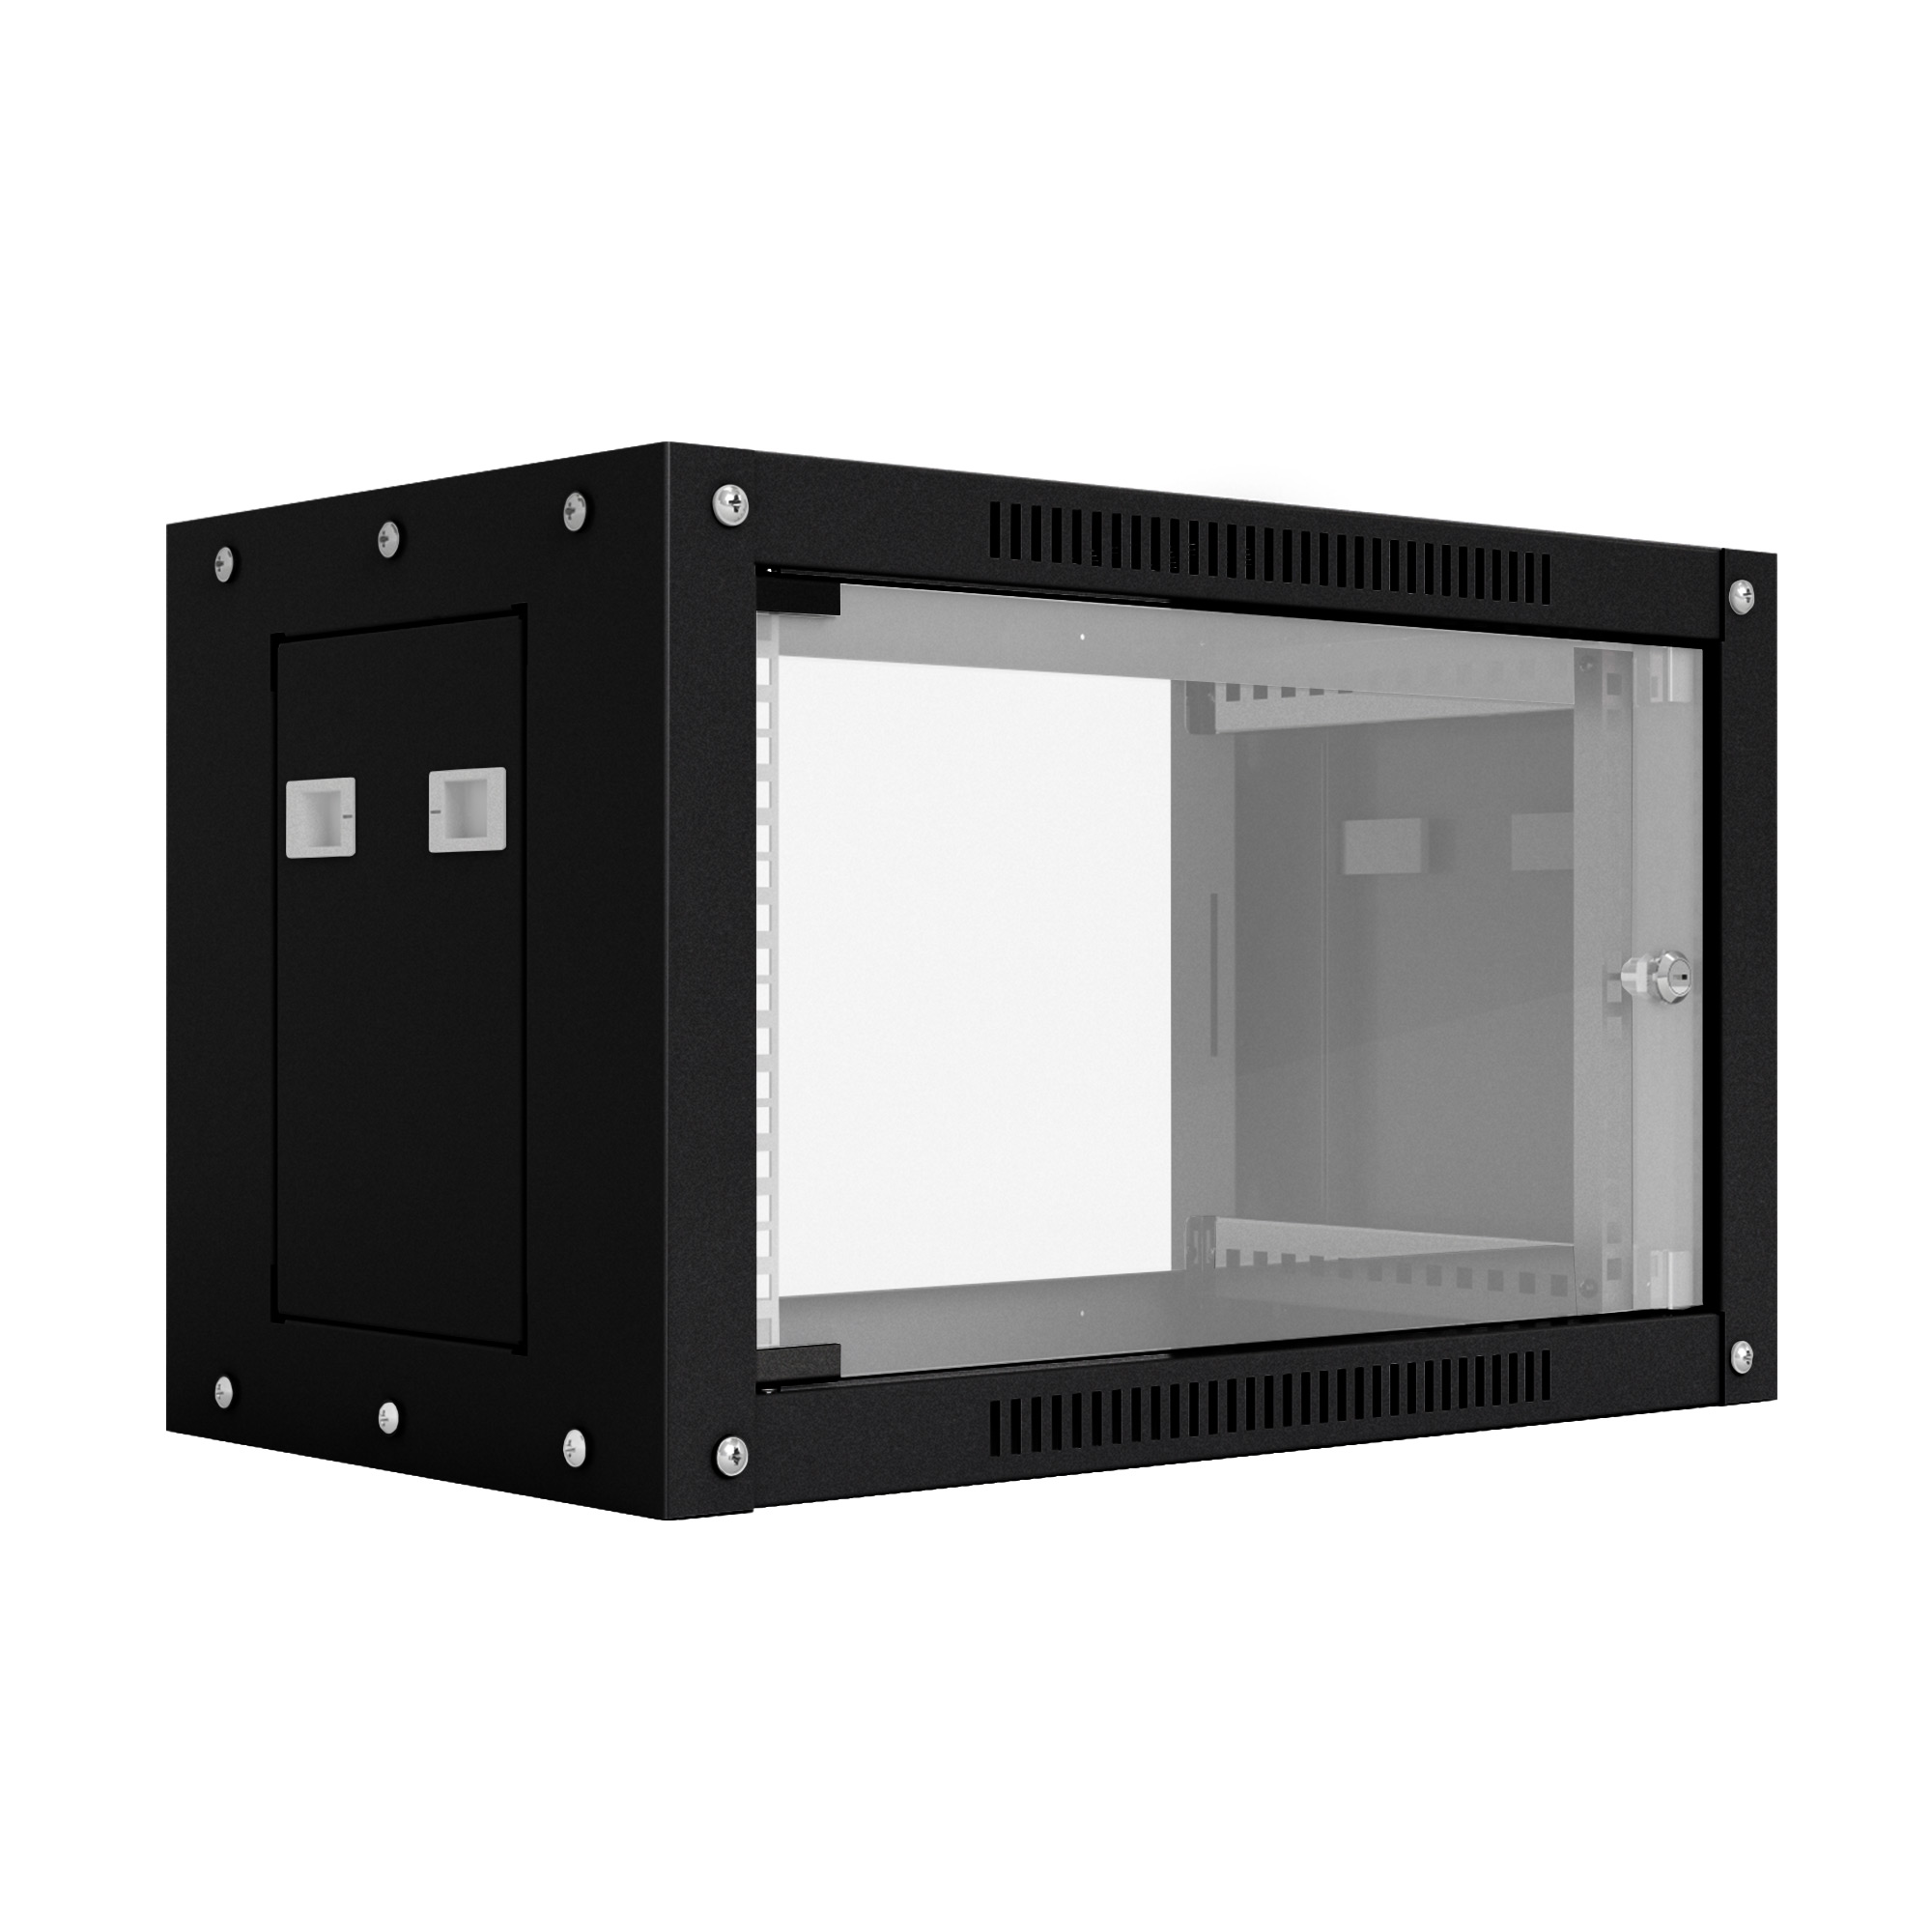 Шкаф настенный телекоммуникационный NTSS WS 15U 600х450х770мм, 2 профиля 19, дверь стеклянная, боковые стенки съемные, разобранный, черный RAL 9005